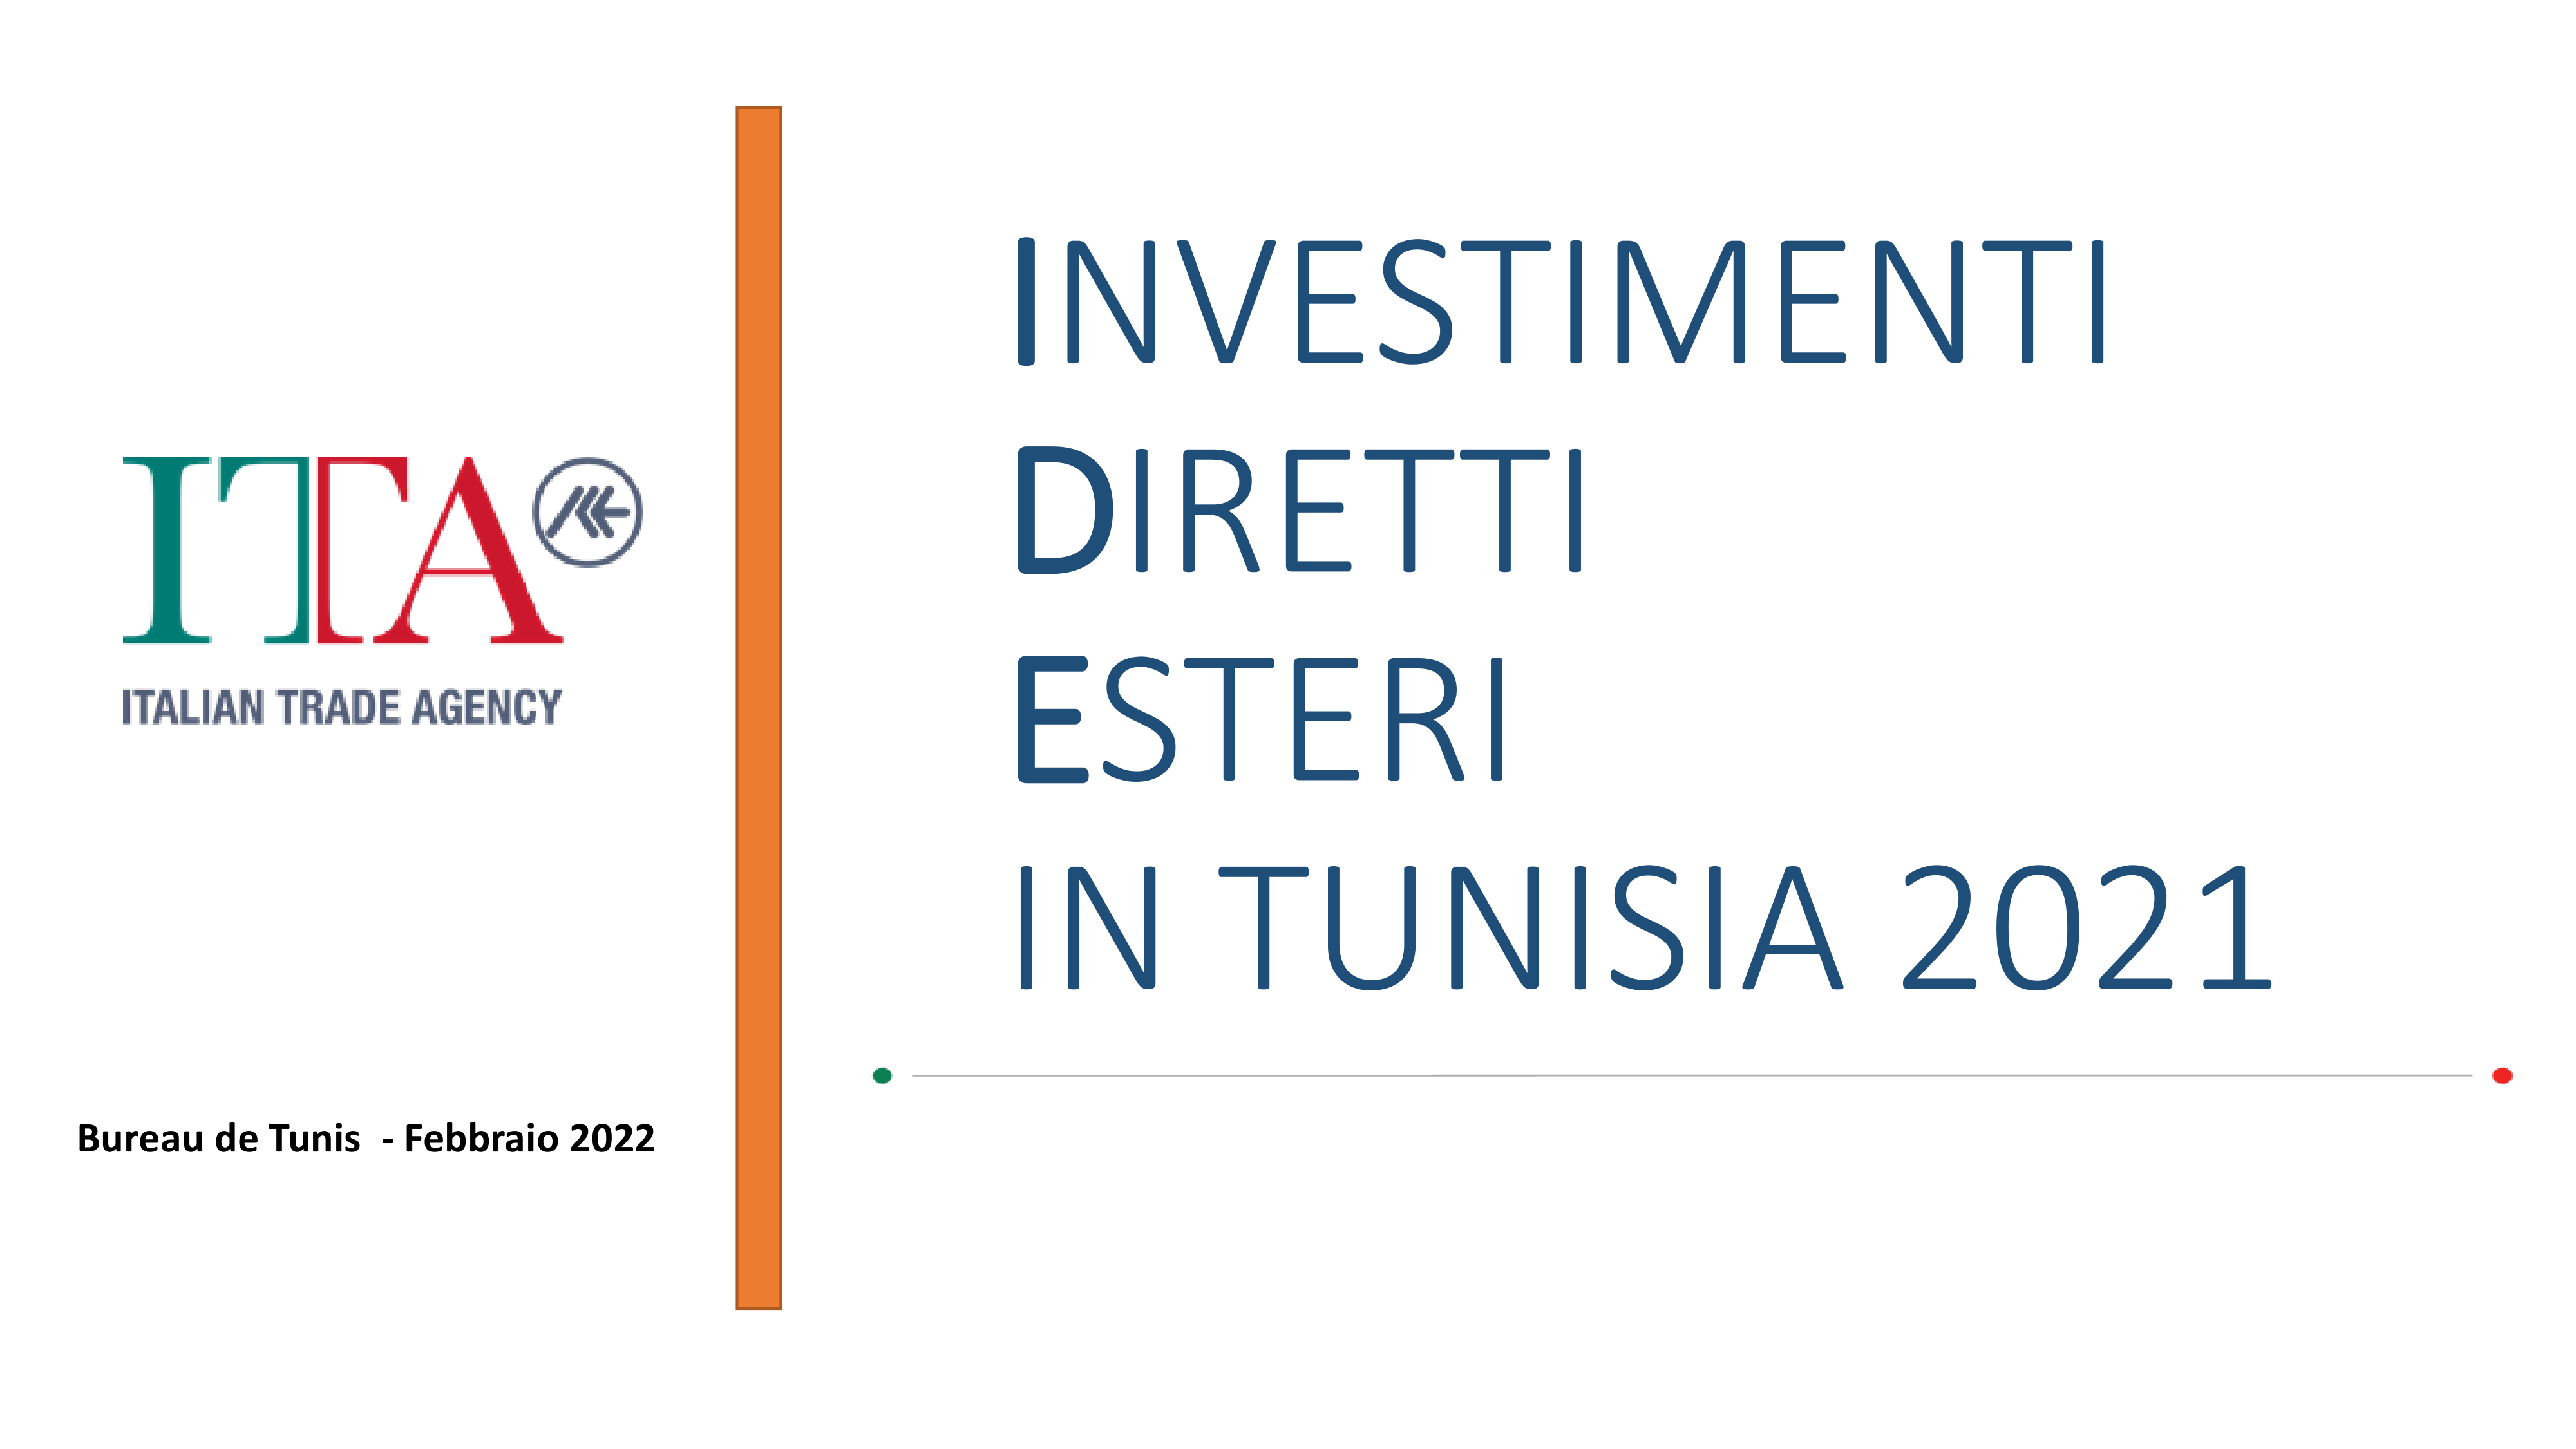 Investimenti Diretti Esteri in Tunisia 2021